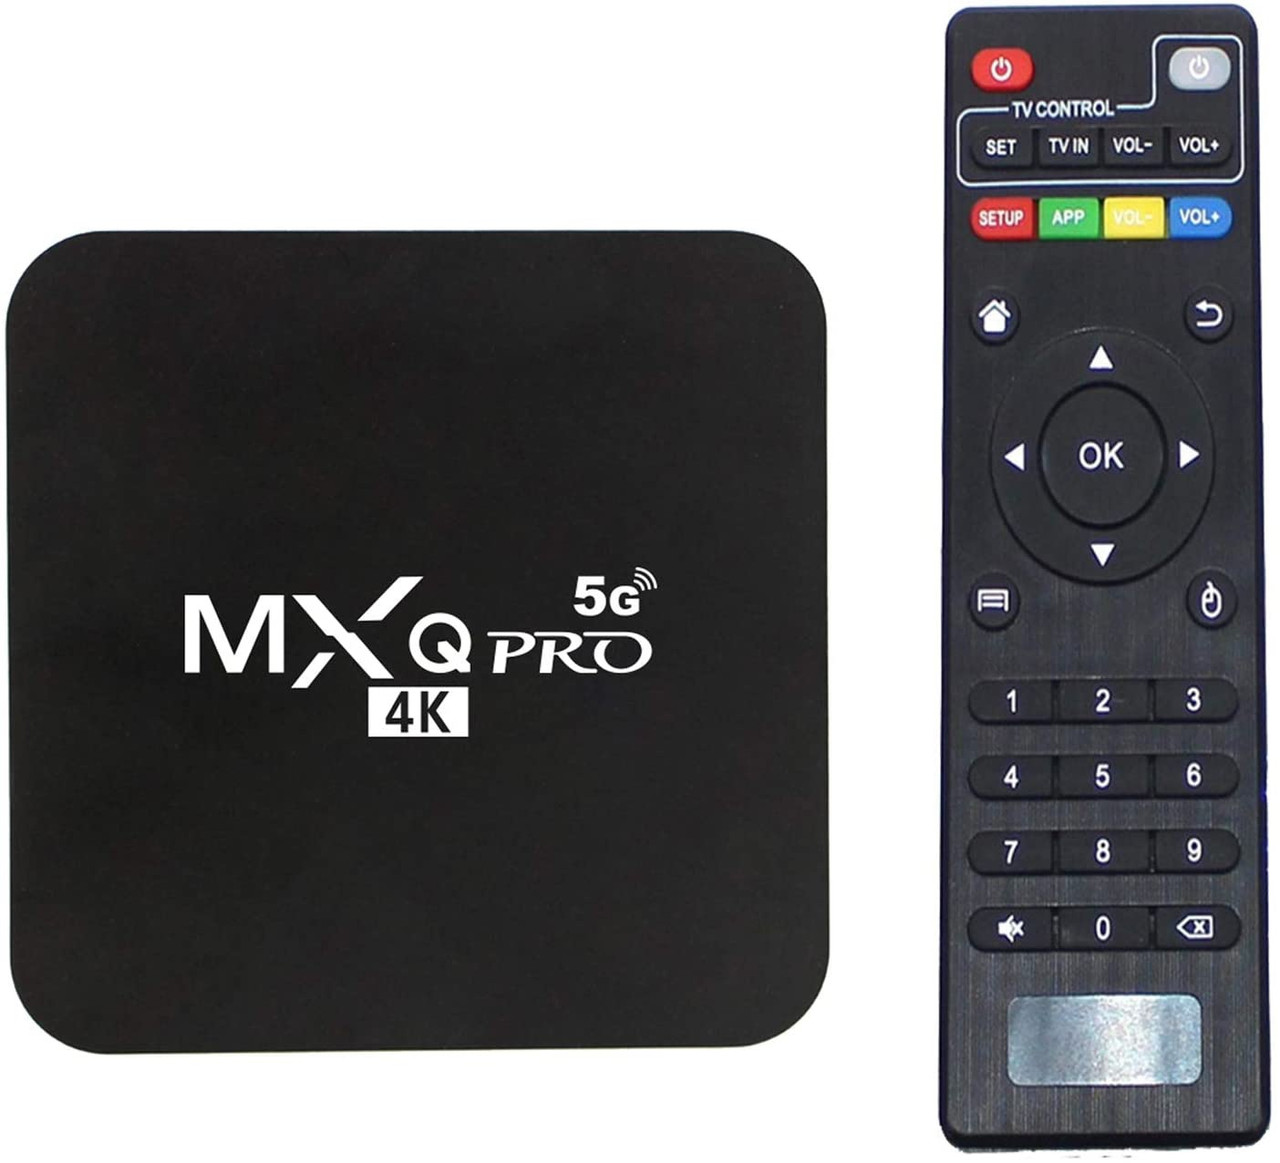 Tv Box Android 10 1 2g 16g Mxq Pro 5g 4k Ucd 3840x2160 A Ally Sons